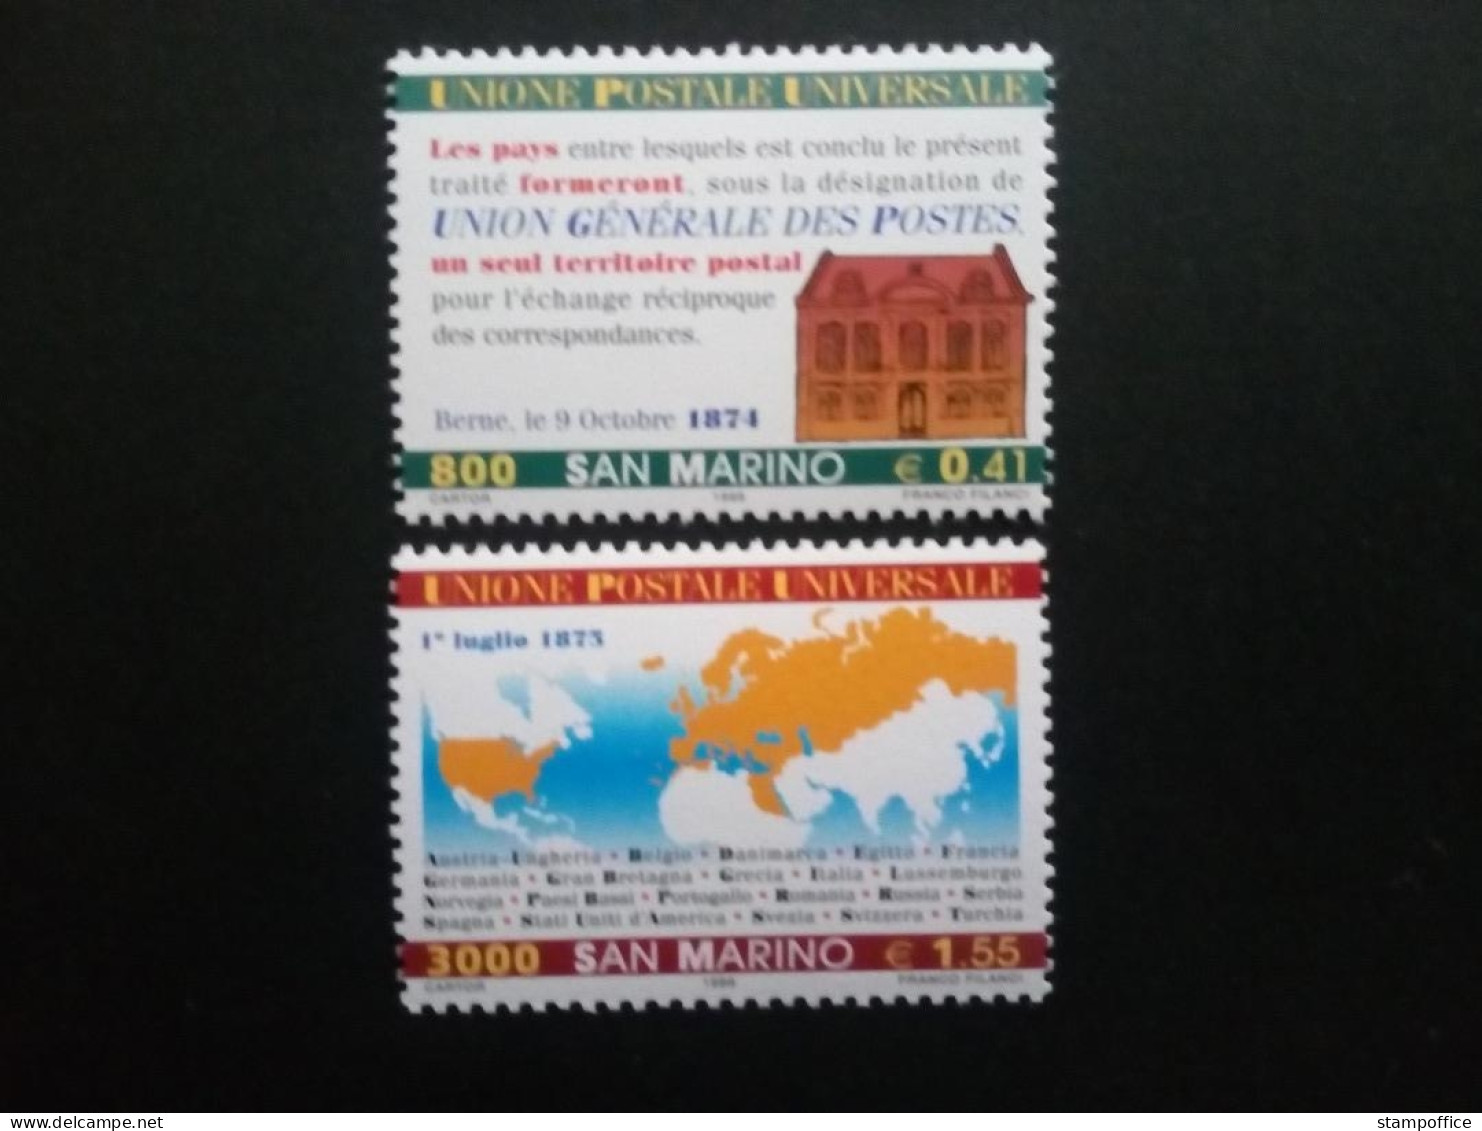 SAN MARINO MI-NR. 1836-1837 POSTFRISCH(MINT) 125 JAHRE WELTPOSTVEREIN(UPU) 1999 - Unused Stamps